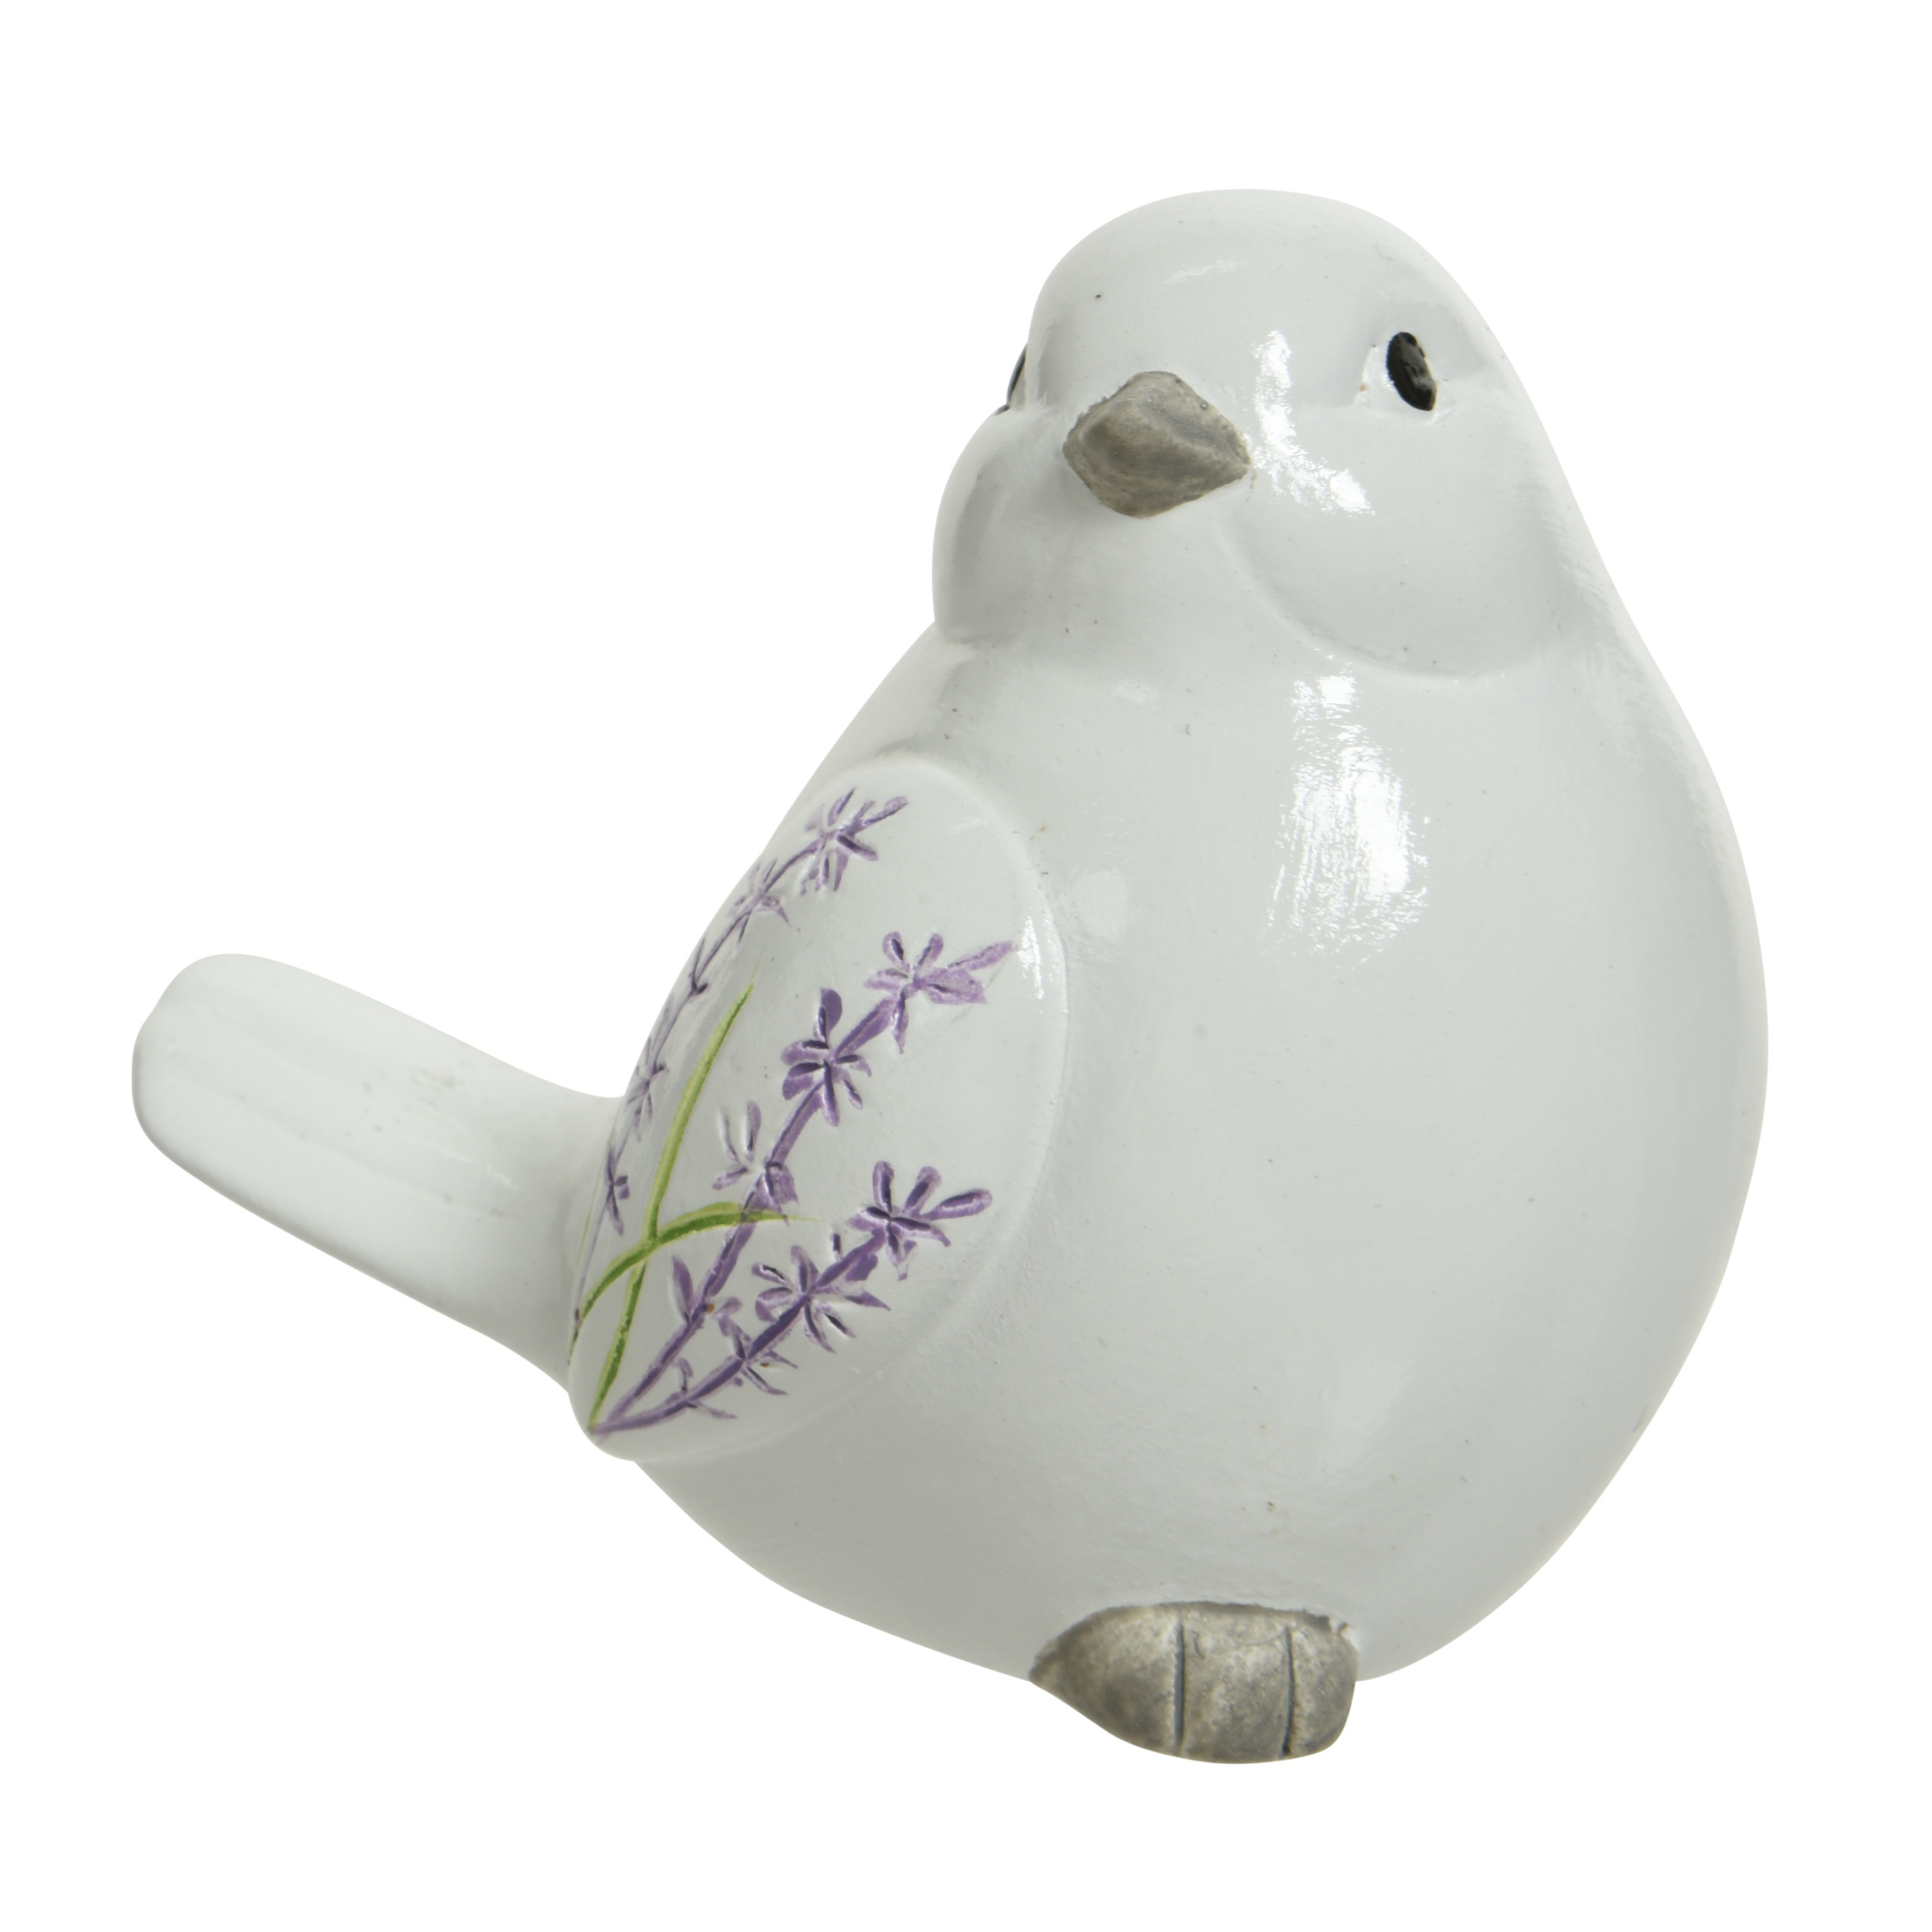 Decoratie dieren beeld vogel wit met lavendel bloemen met staart omlaag 9 cm